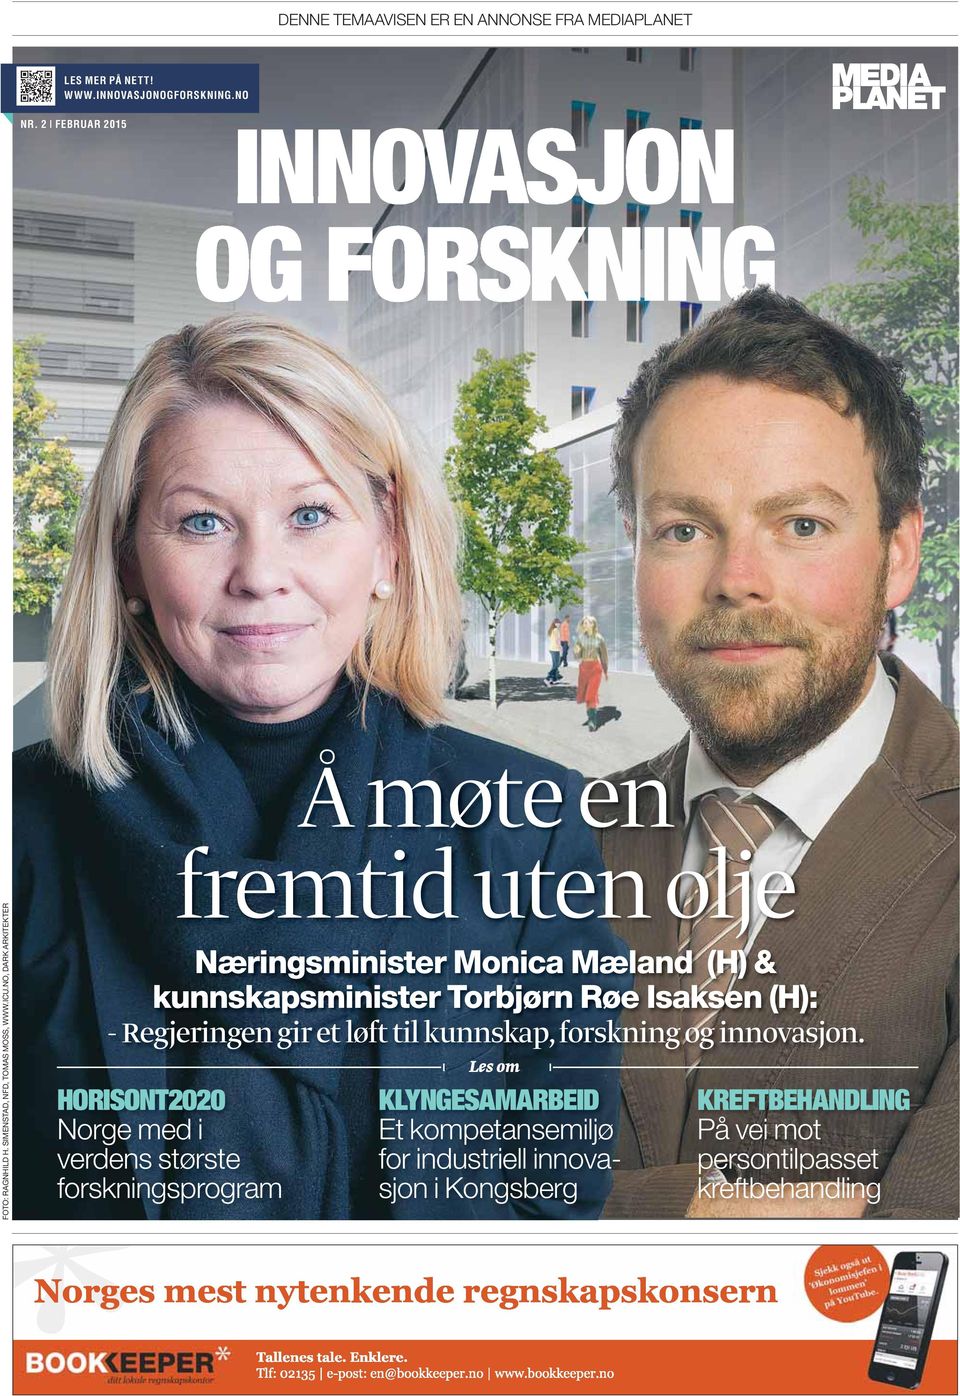 NO, DARK ARKITEKTER HORISONT2020 Norge med i verdens største forskningsprogram fremtid uten olje Næringsminister Monica Mæland (H) &